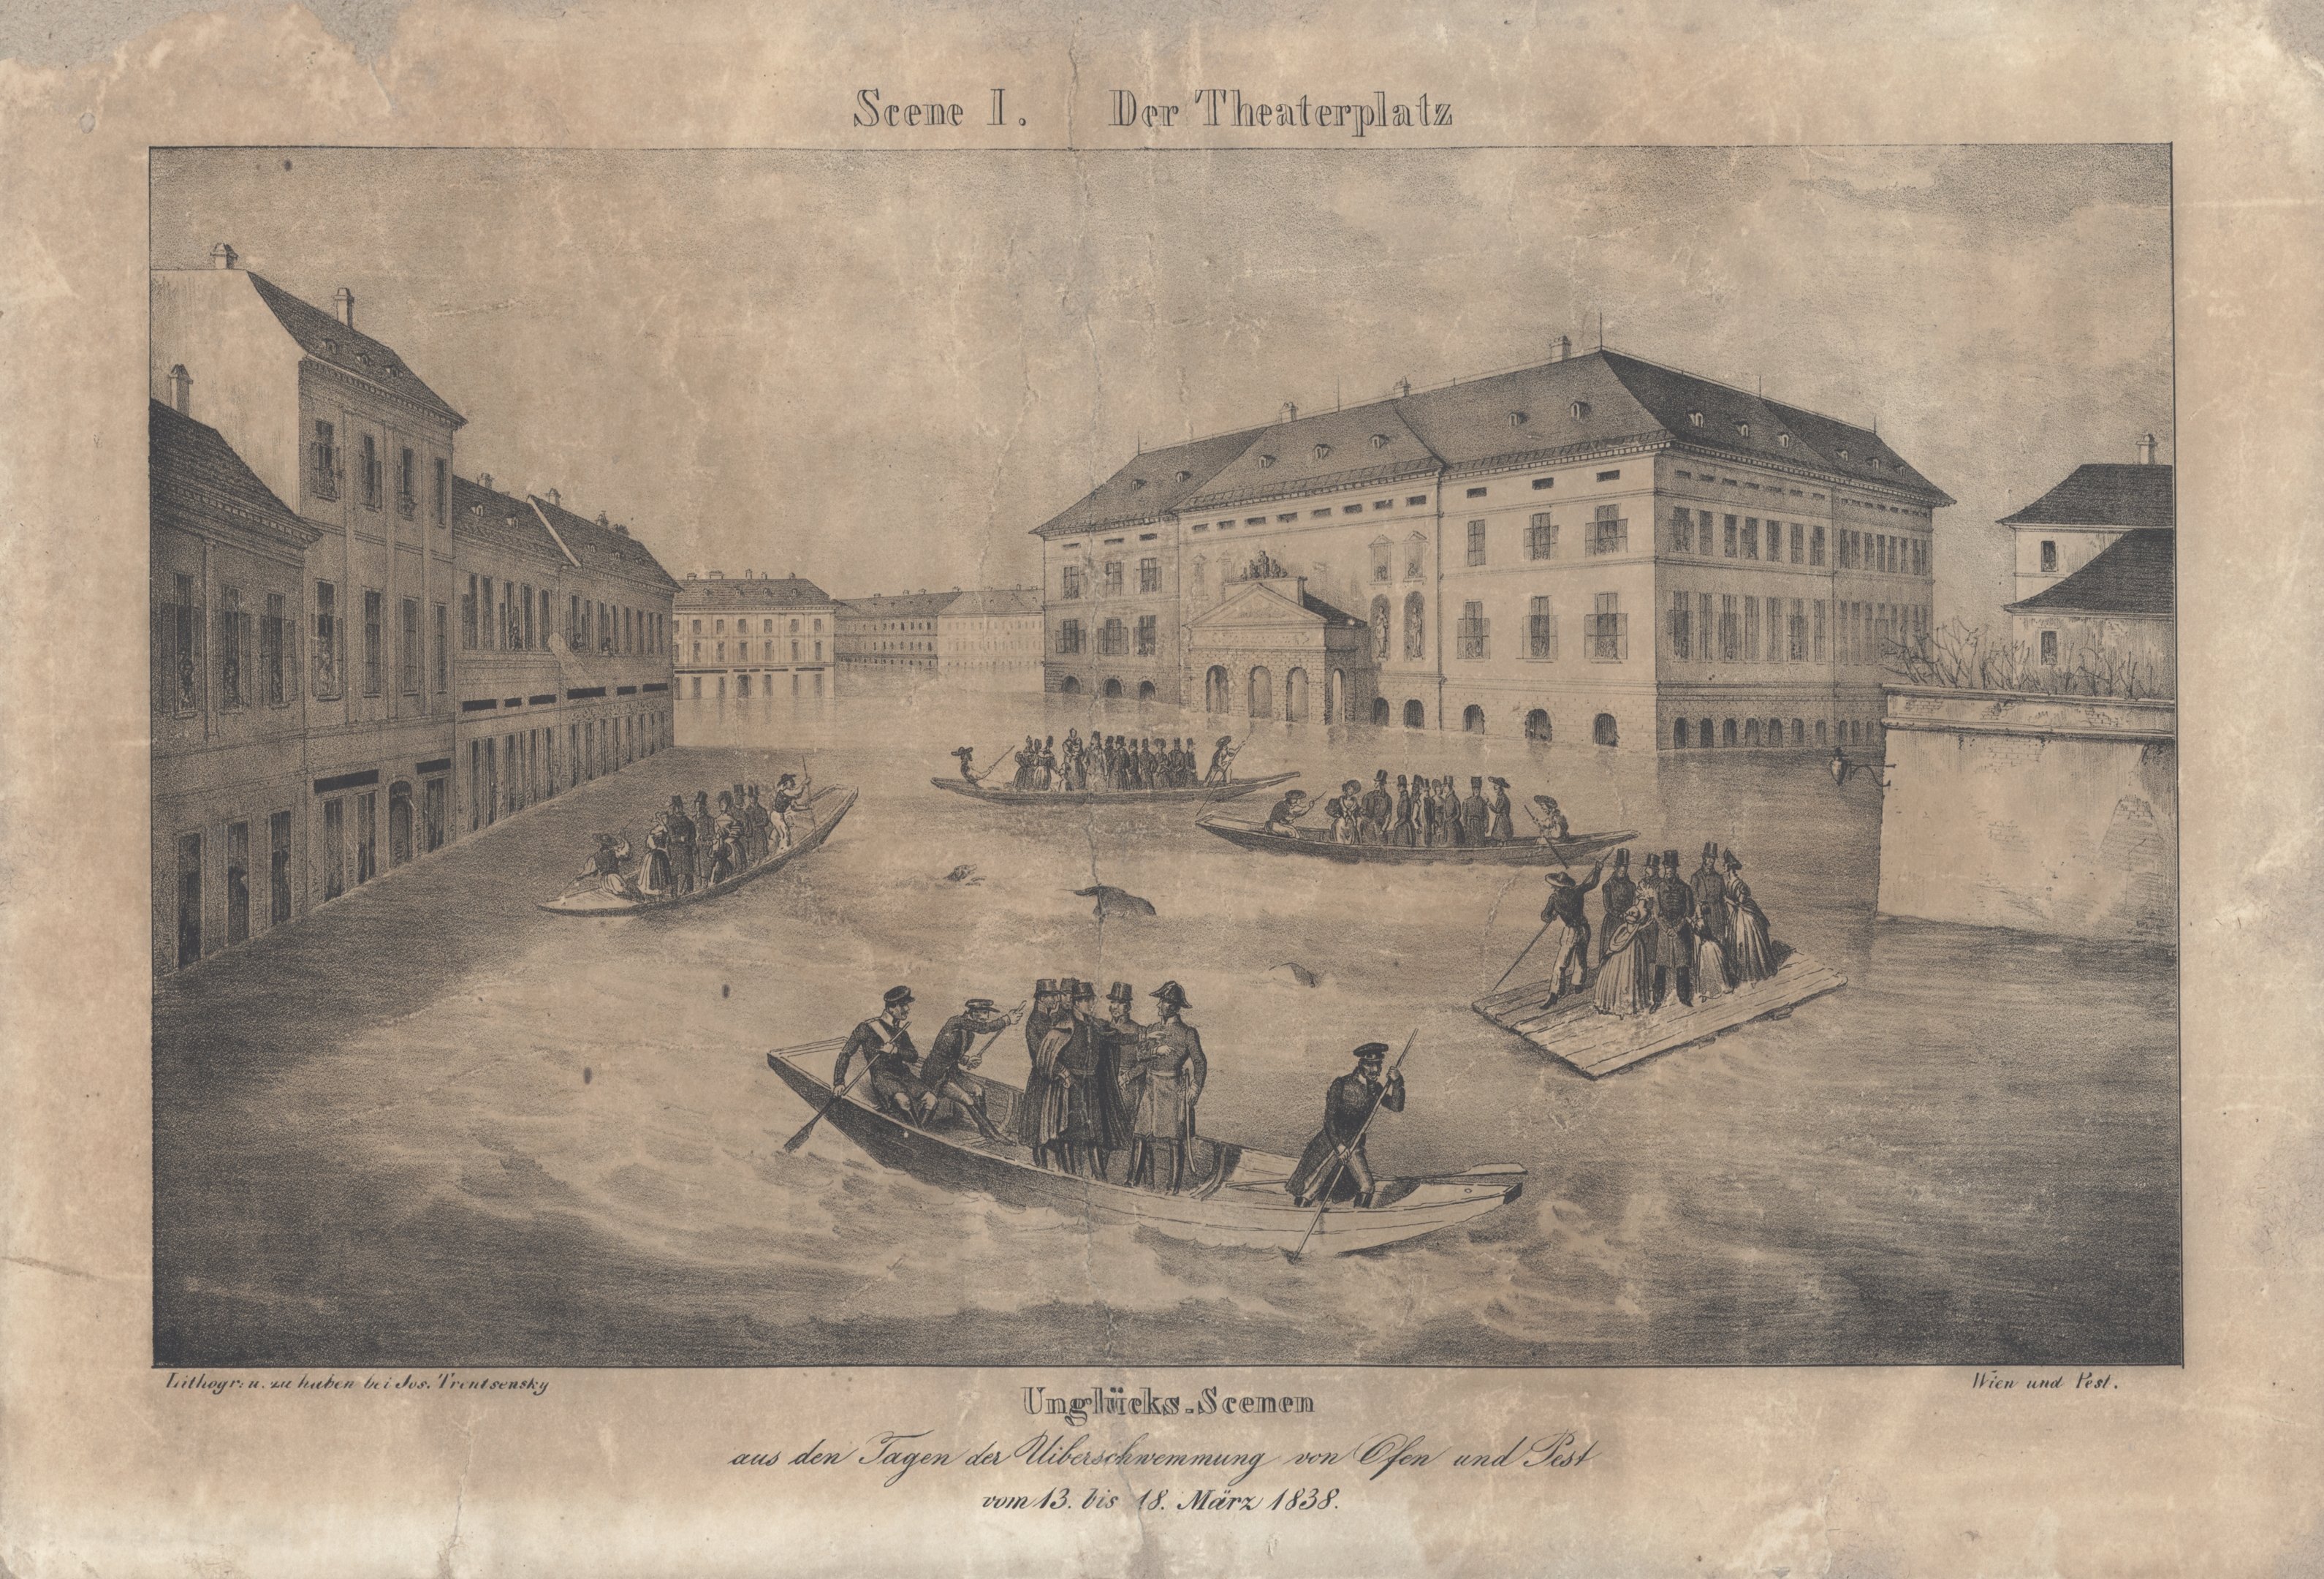 1838. évi árvíz Pest-Budán - A német színház épülete az árvíz idején (Magyar Környezetvédelmi és Vízügyi Múzeum - Duna Múzeum CC BY-NC-SA)